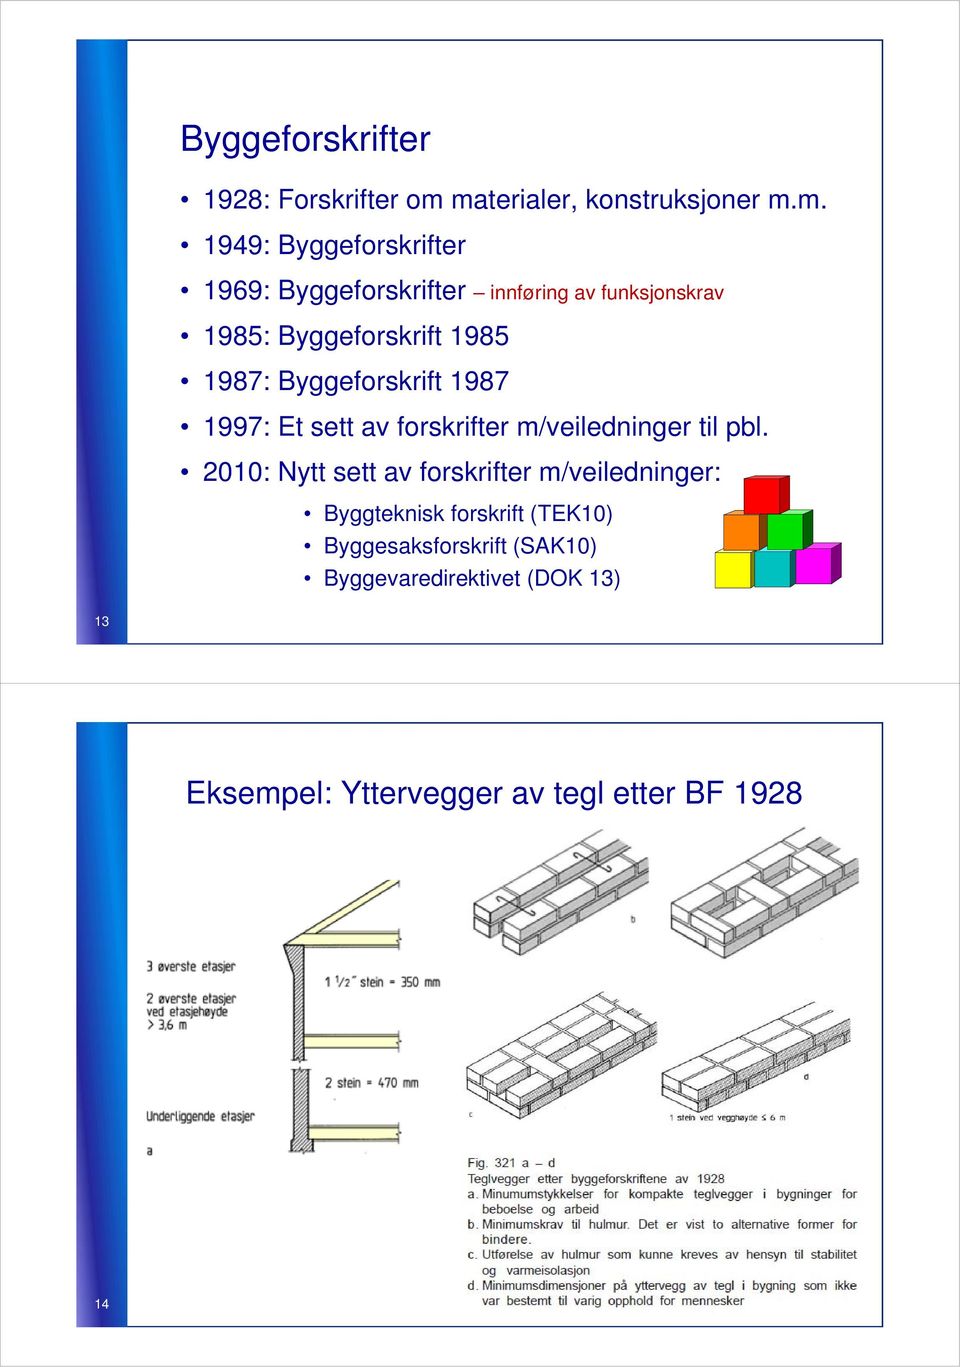 1985: Byggeforskrift 1985 1987: Byggeforskrift 1987 1997: Et sett av forskrifter m/veiledninger til pbl.